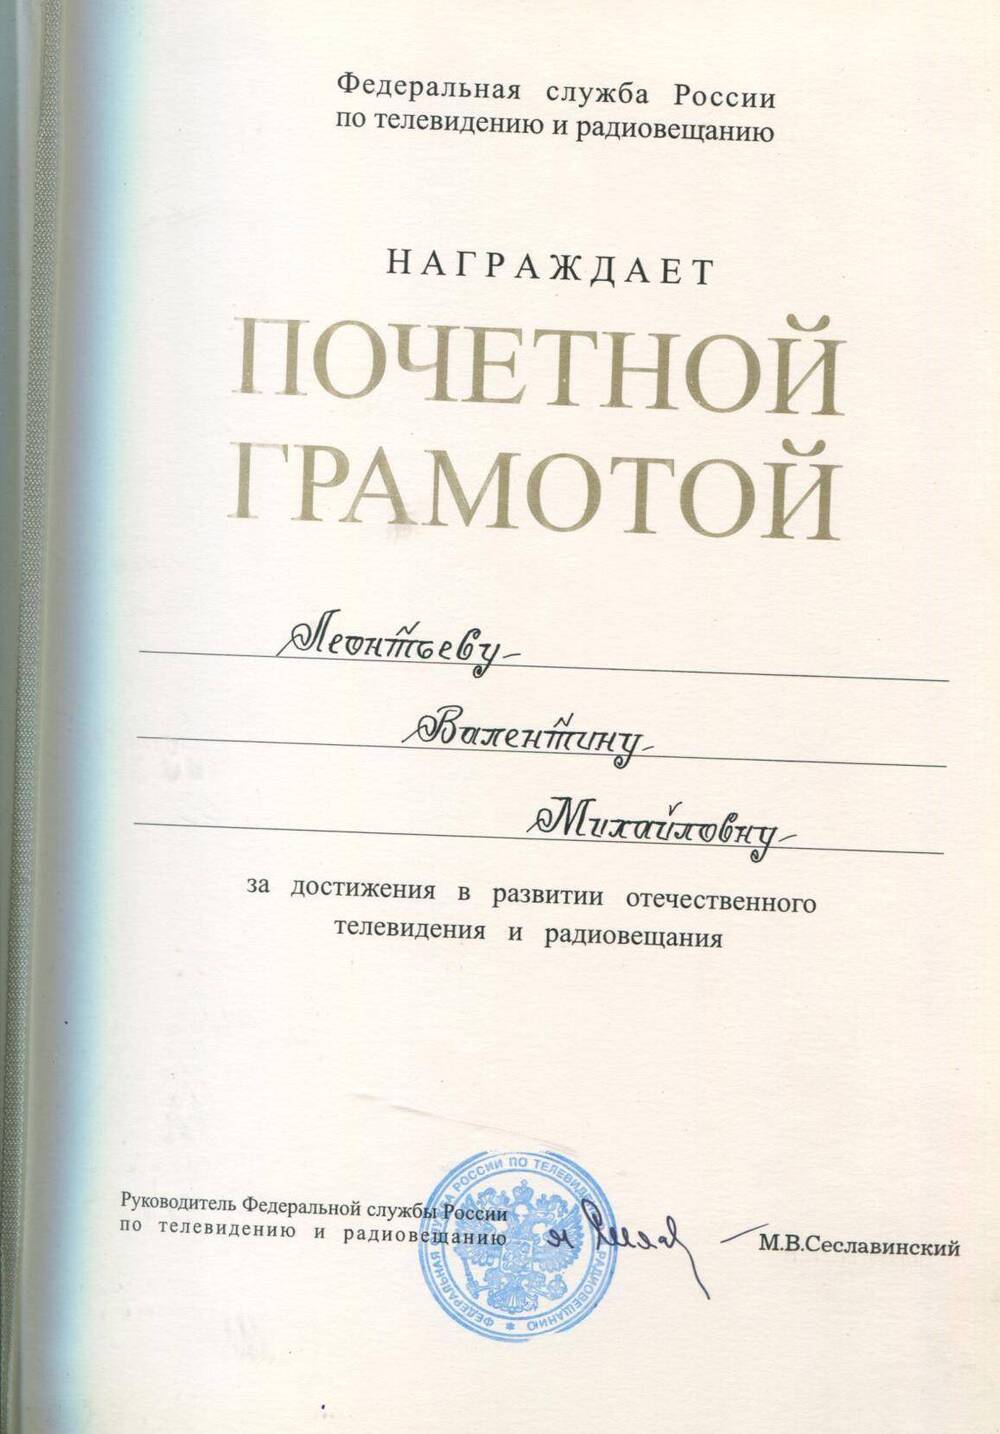 Почетная грамота В.М.Леонтьевой  за достижения в развитиии отечественного телевидения и радиовещания.